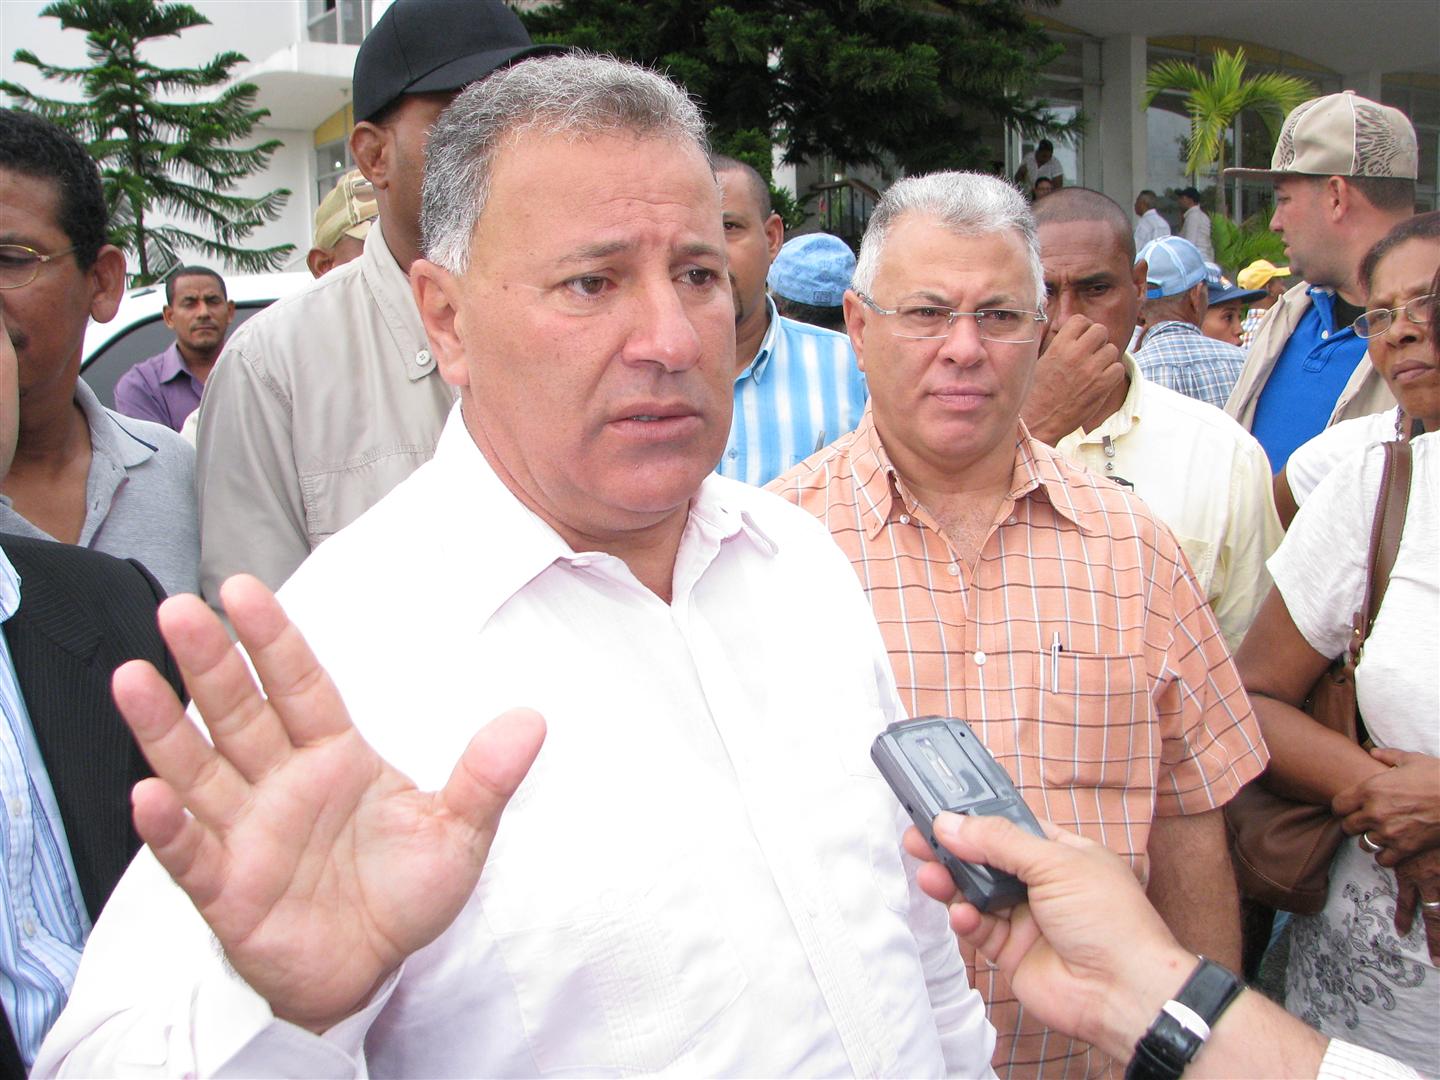 Juan Gilberto Serrulle, intentará impedir el cambio de nombre del PTD a “La Fuerza del Pueblo”